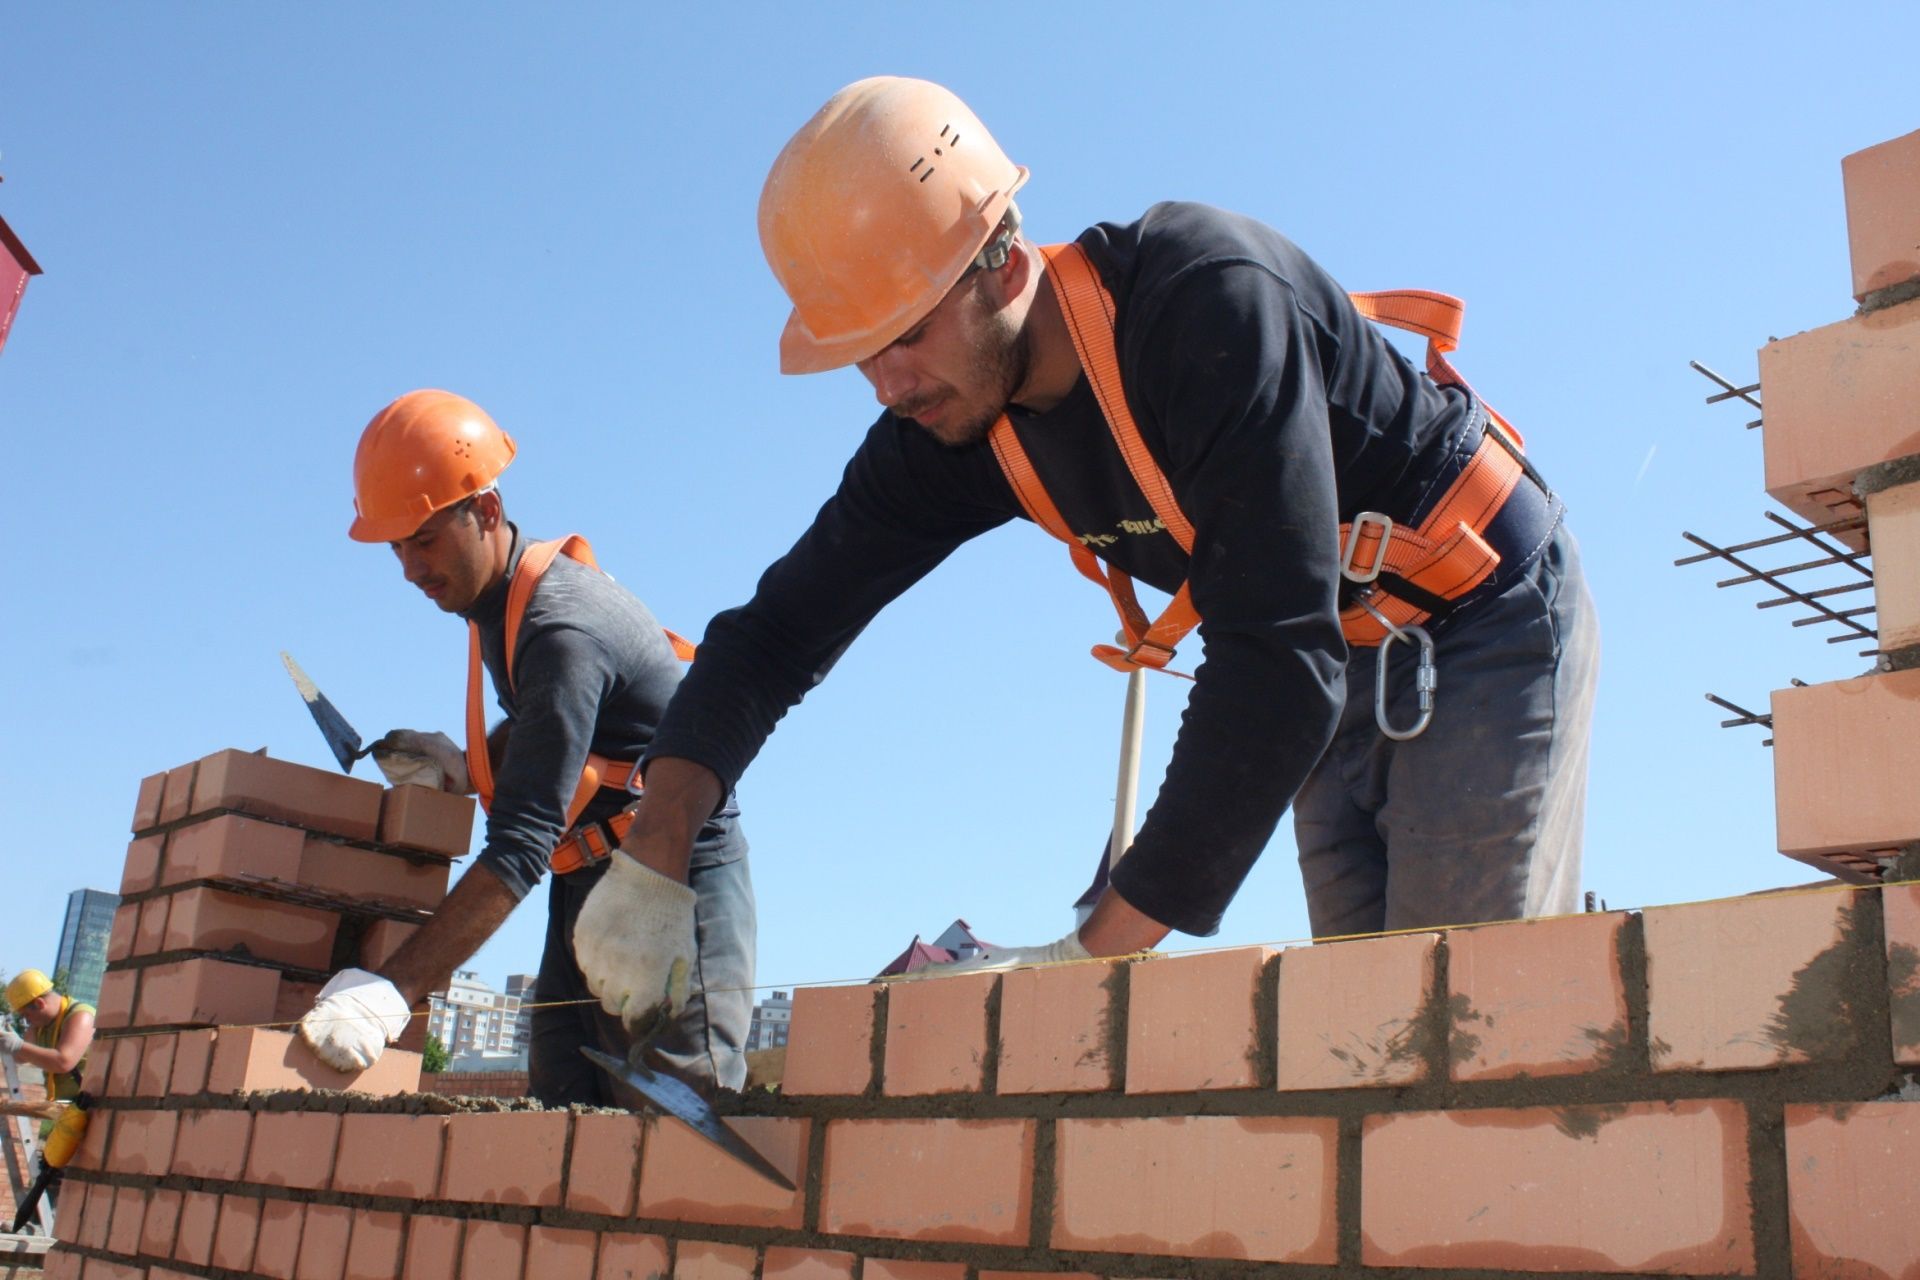 Каменщики бетонщики штукатурщики выполняем все виды строительных работ